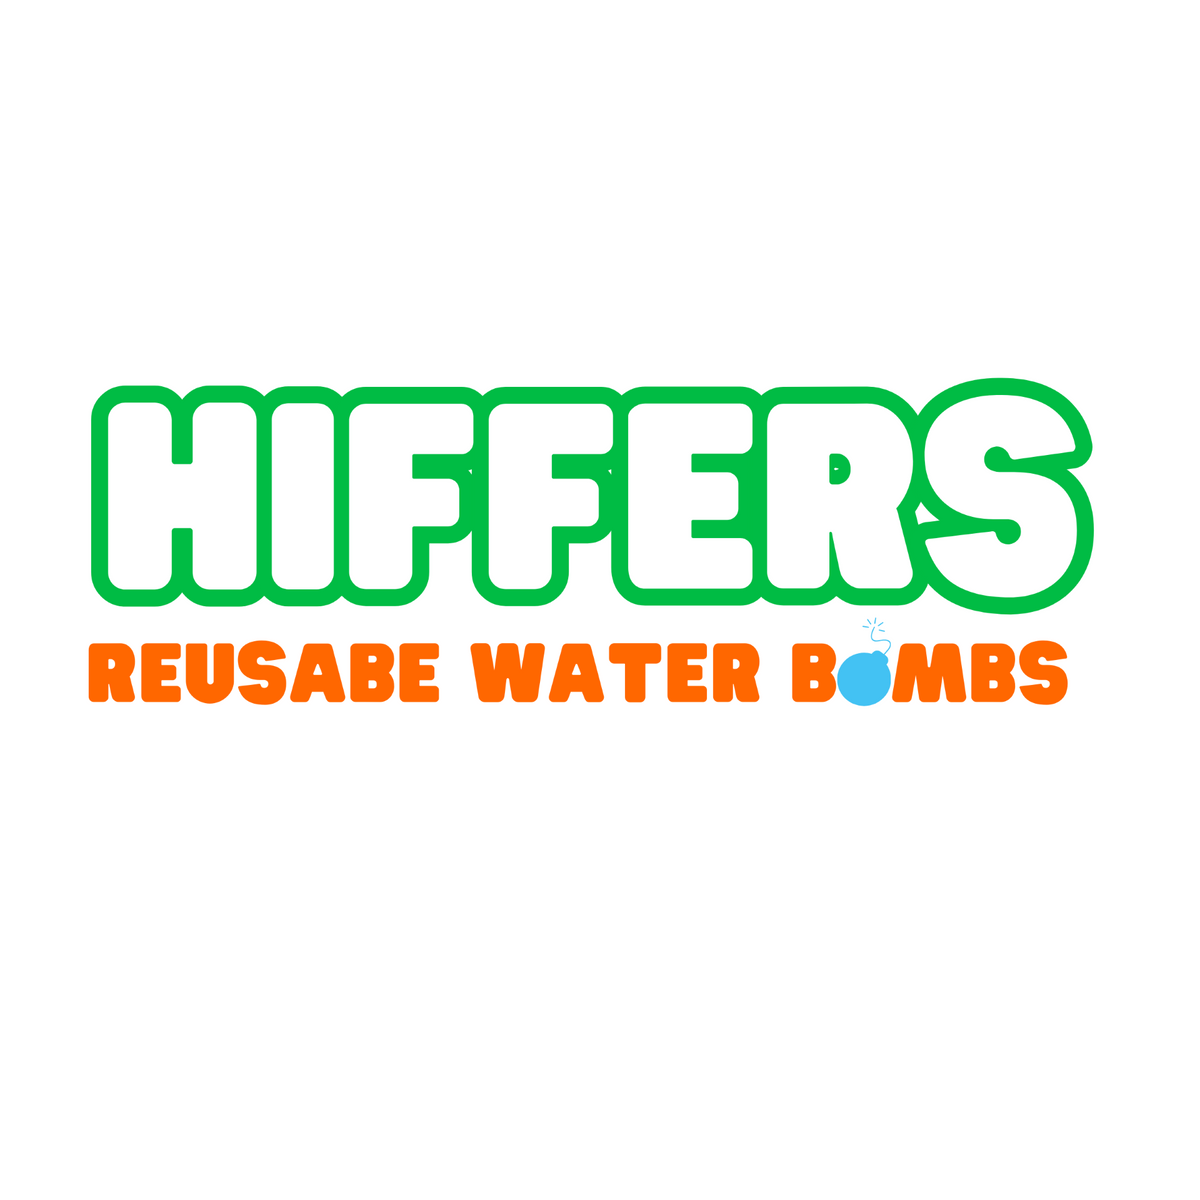 Hiffers - Reusable Water Bombs Mixed Bag